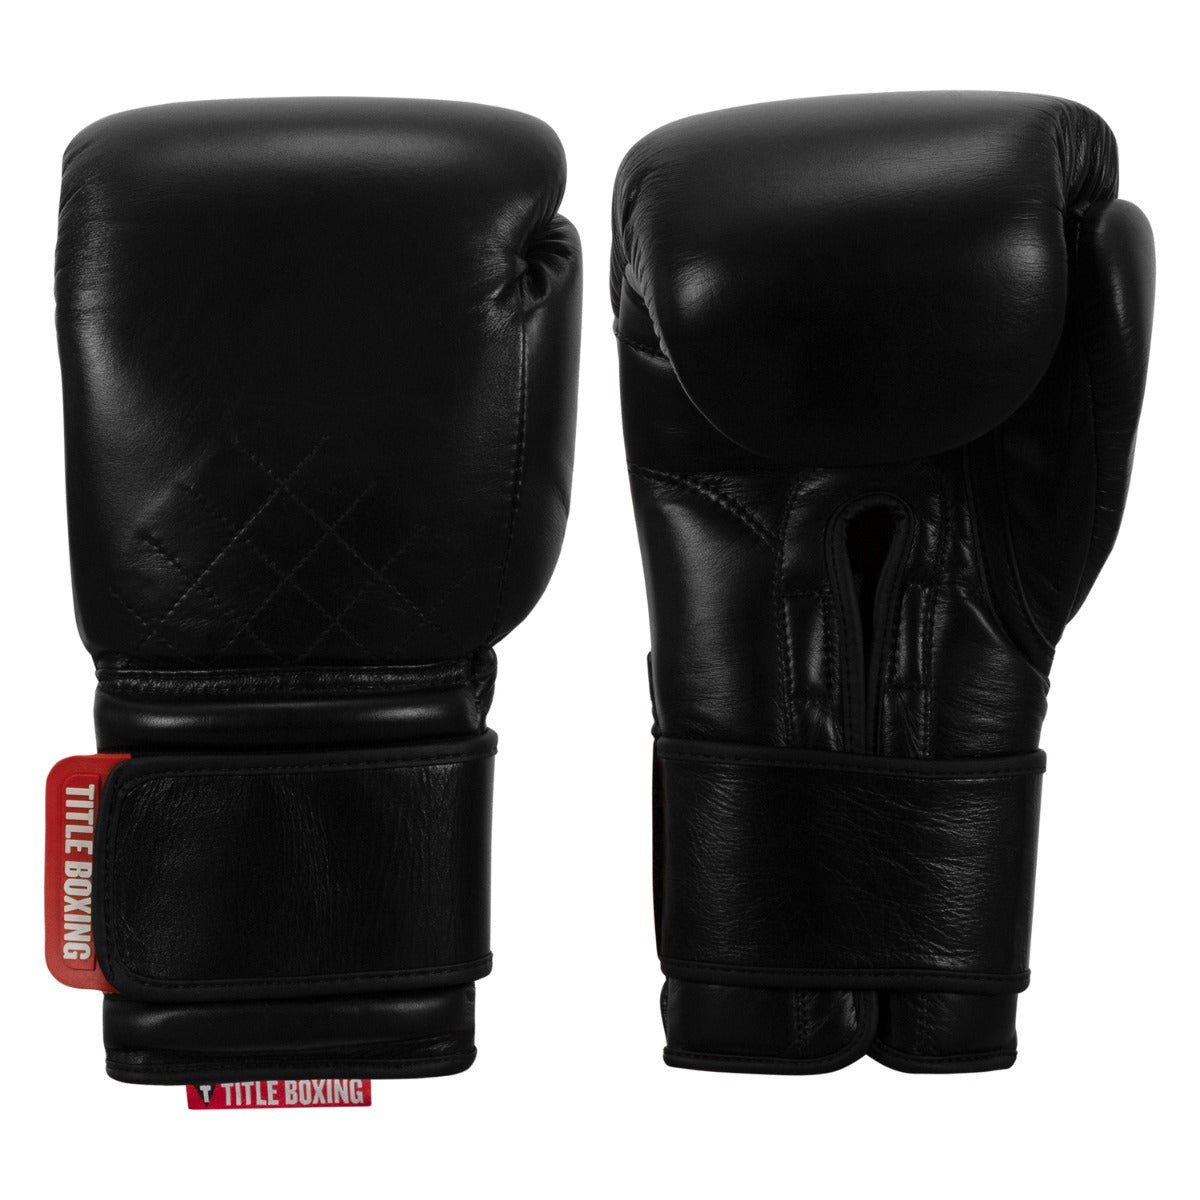 Title Boxing Ko-Vert Training Gloves - White, 16 oz